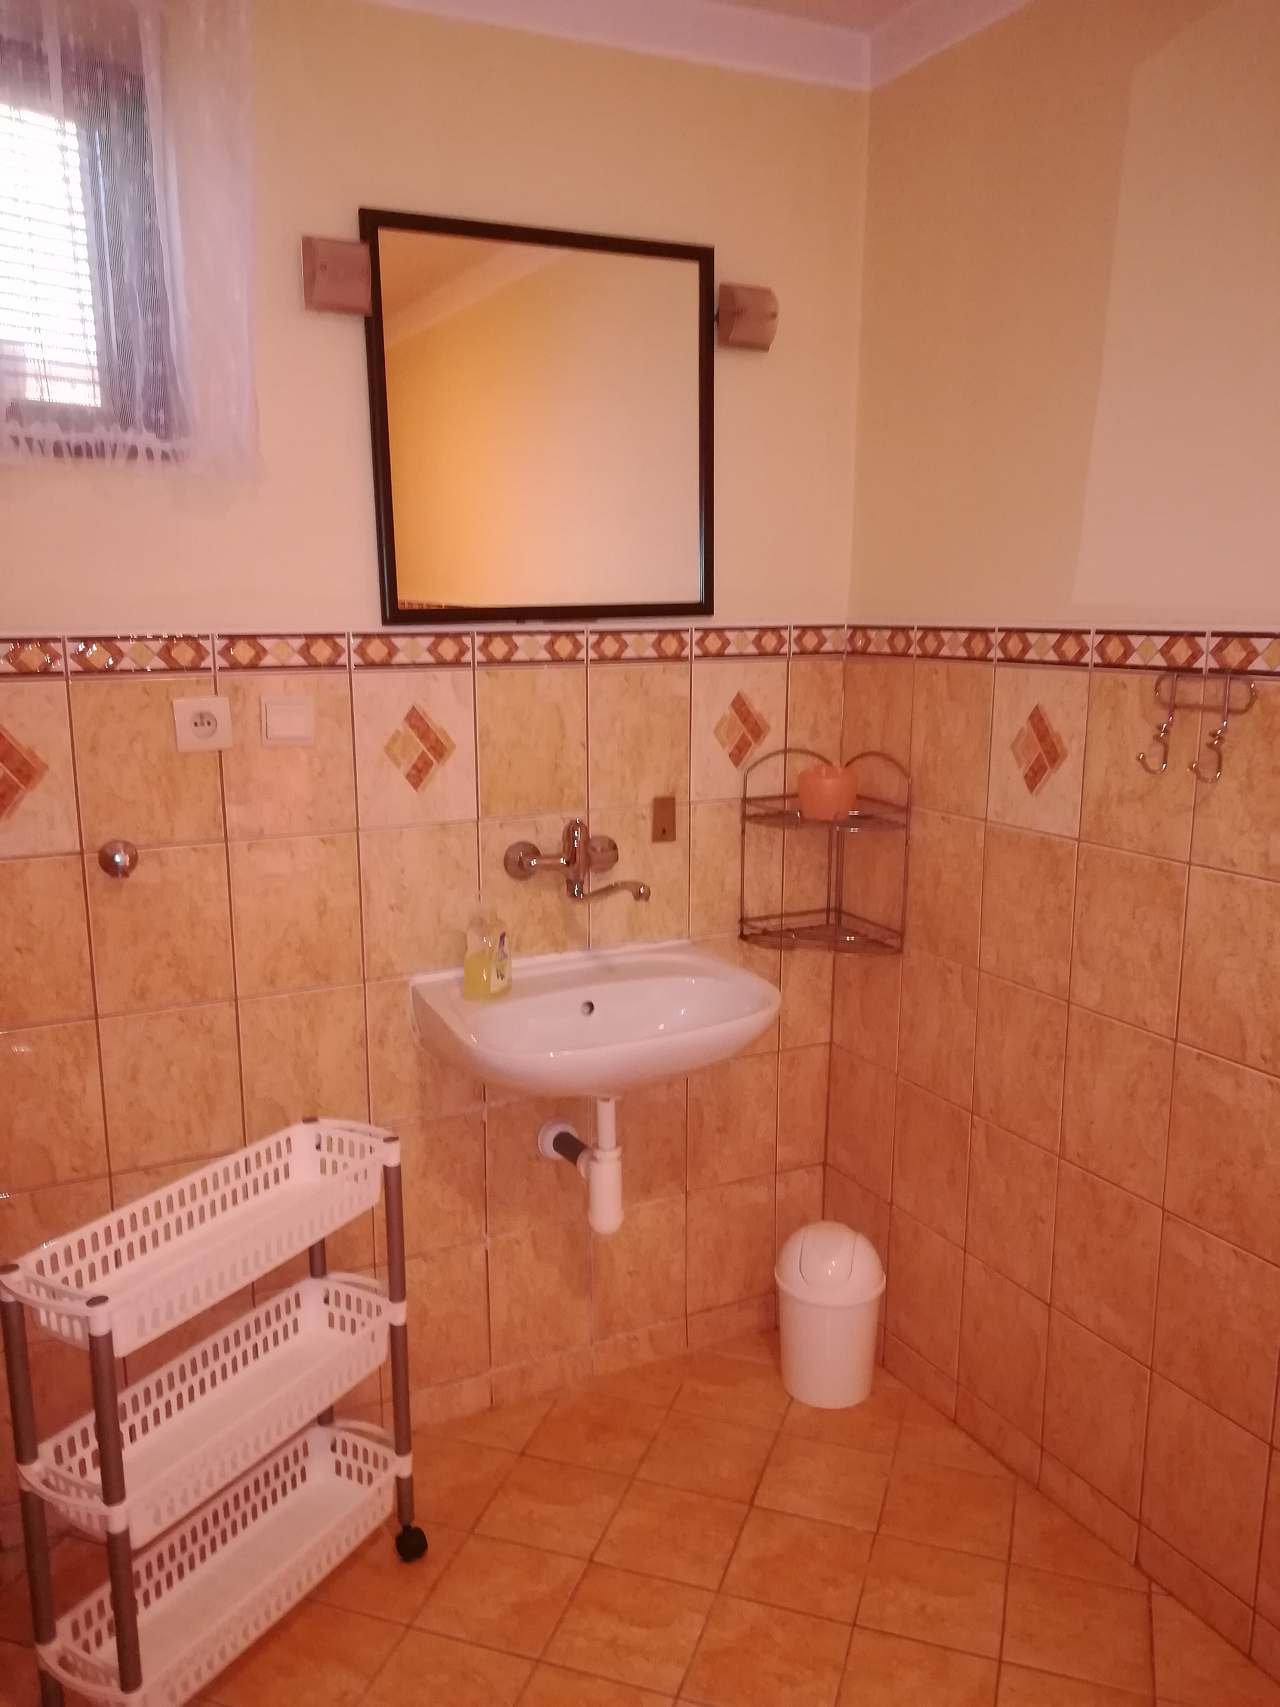 Koupelna, WC  v přízemí vedle dvoulůžkového pokoje